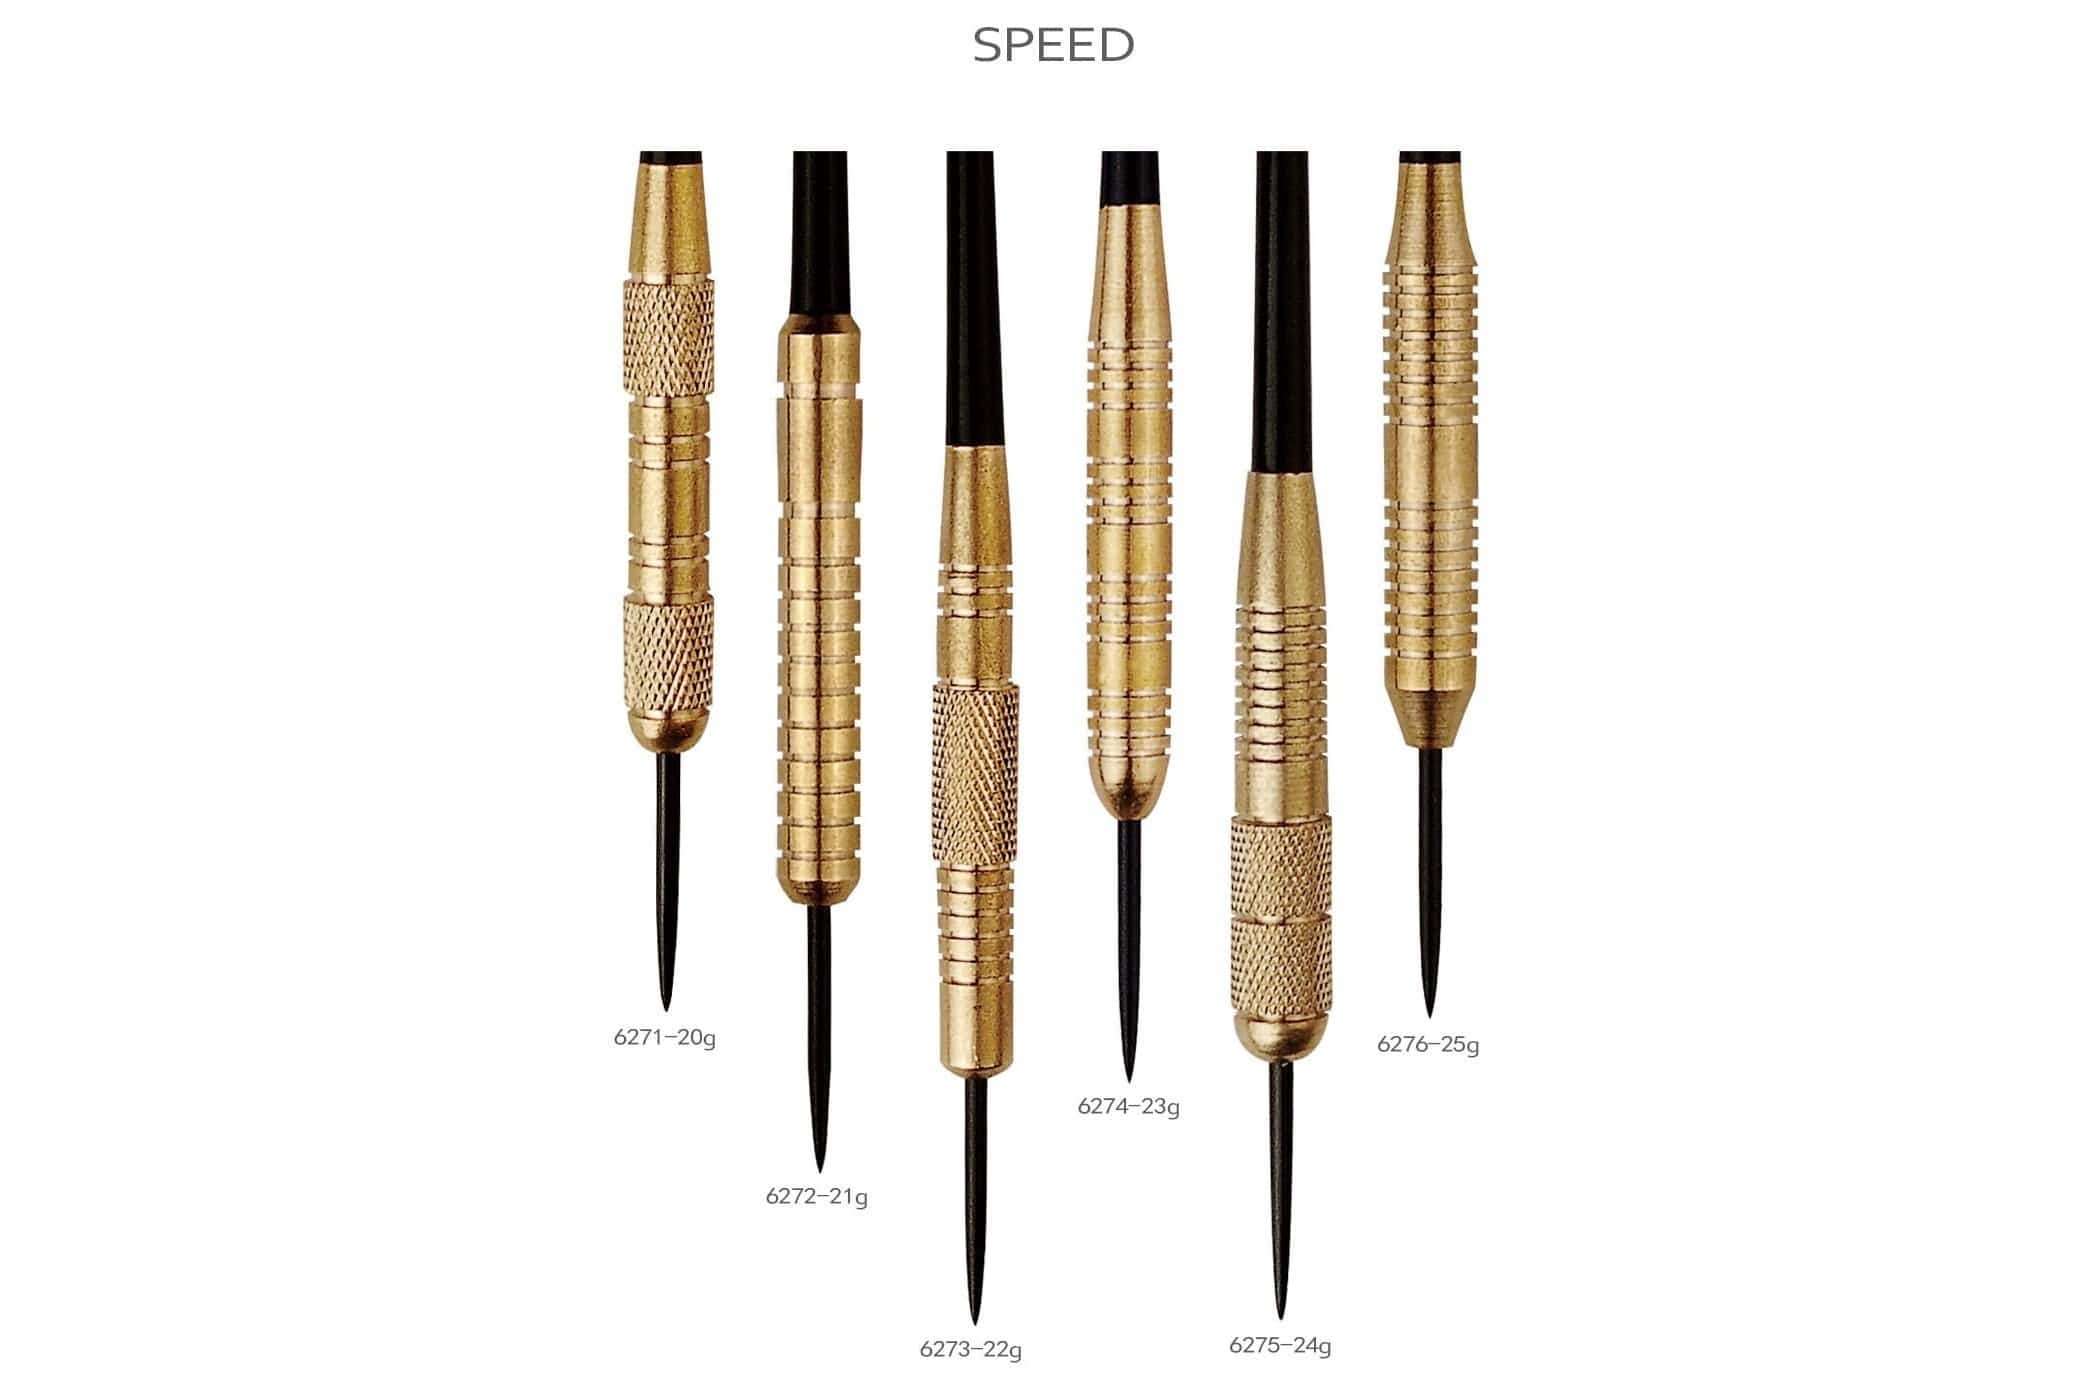 ONE80 Speed Darts Set - STEEL TIP - Brass - Darts Direct